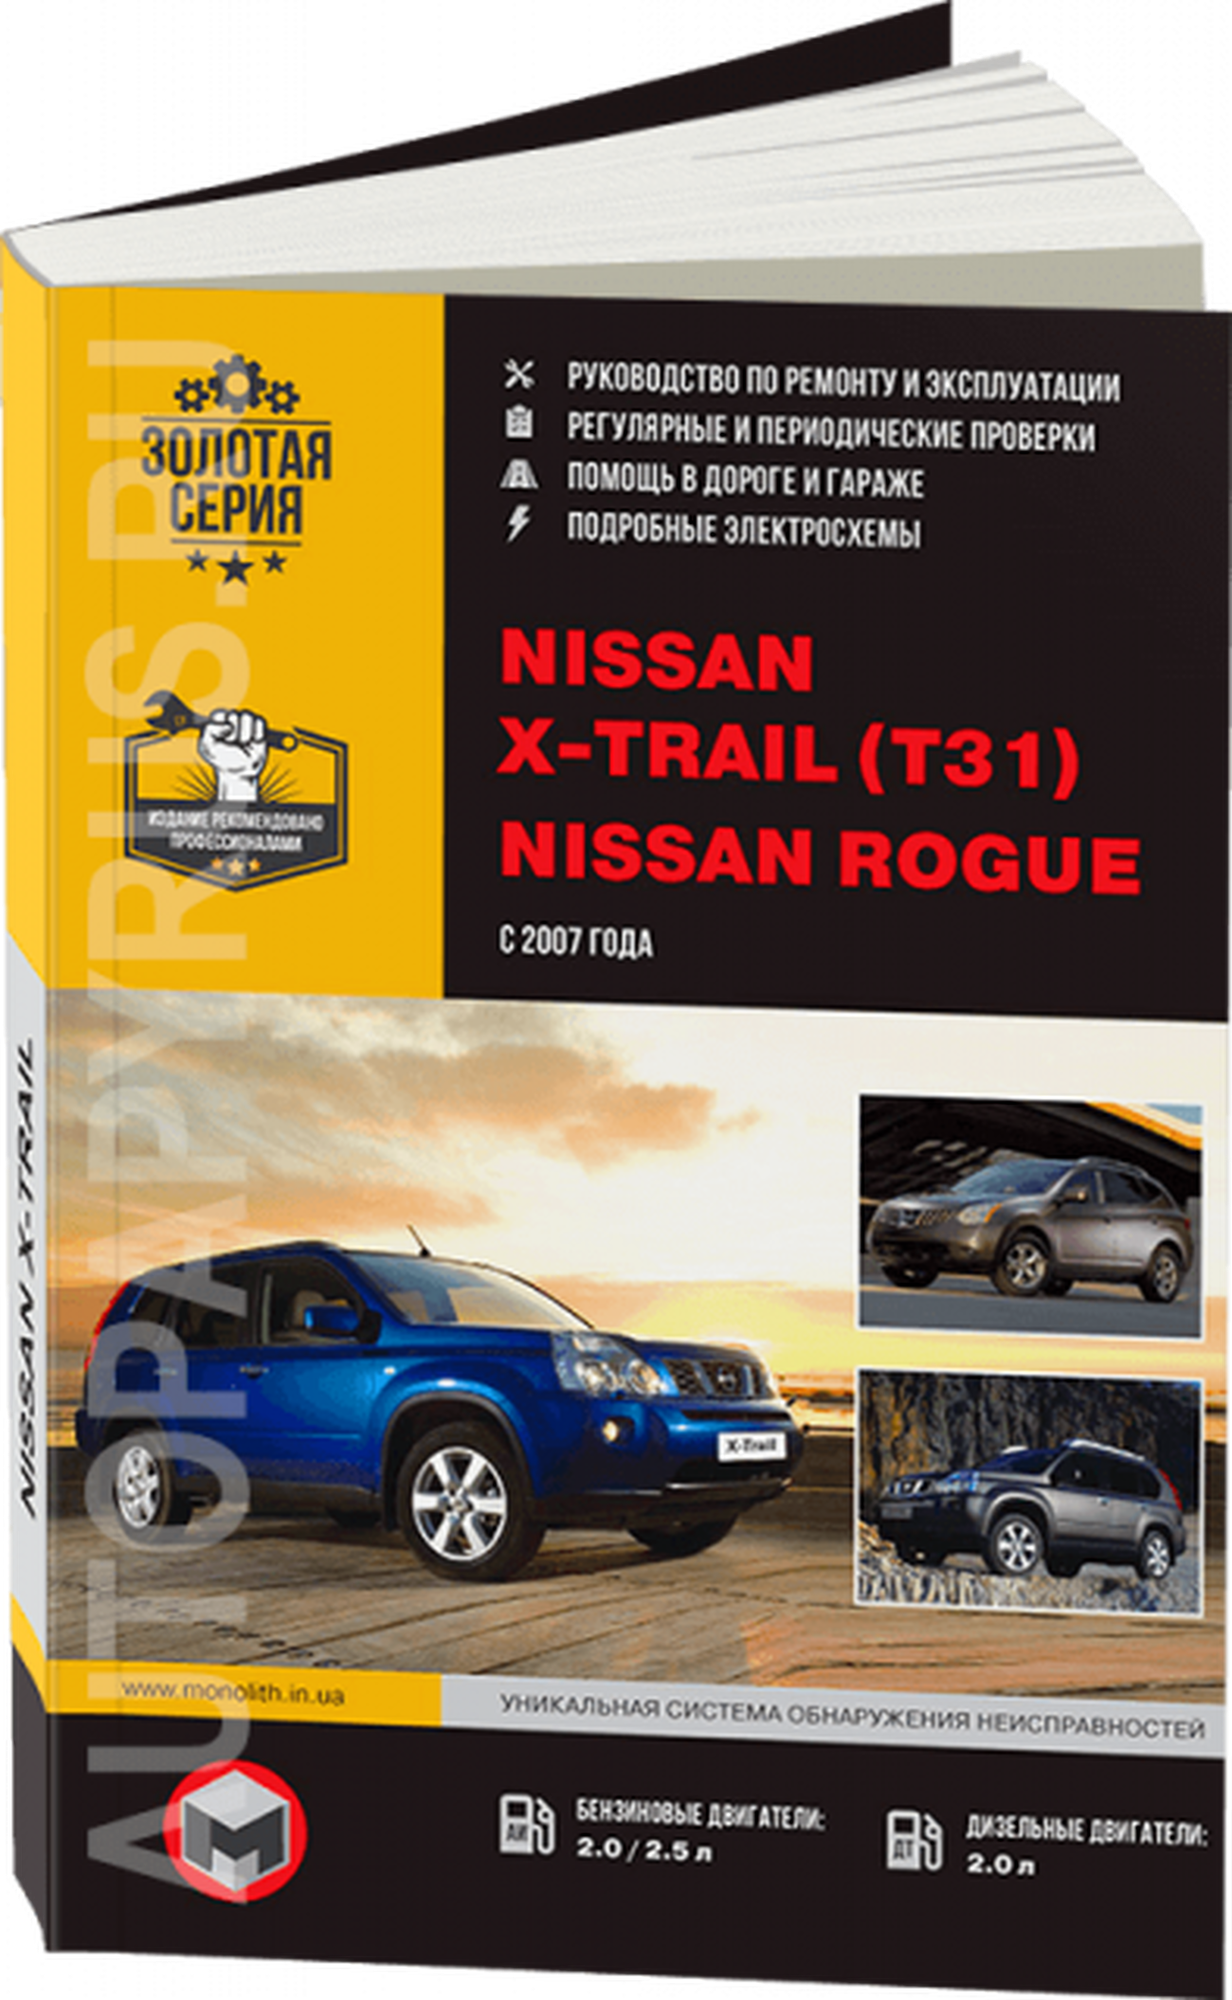 Автокнига: руководство / инструкция по ремонту и эксплуатации NISSAN X-TRAIL (ниссан икс-трэил) (T31) (Т31) / ROGUE (роуг) бензин / дизель с 2007 года выпуска, 978-617-537-050-6, издательство Монолит